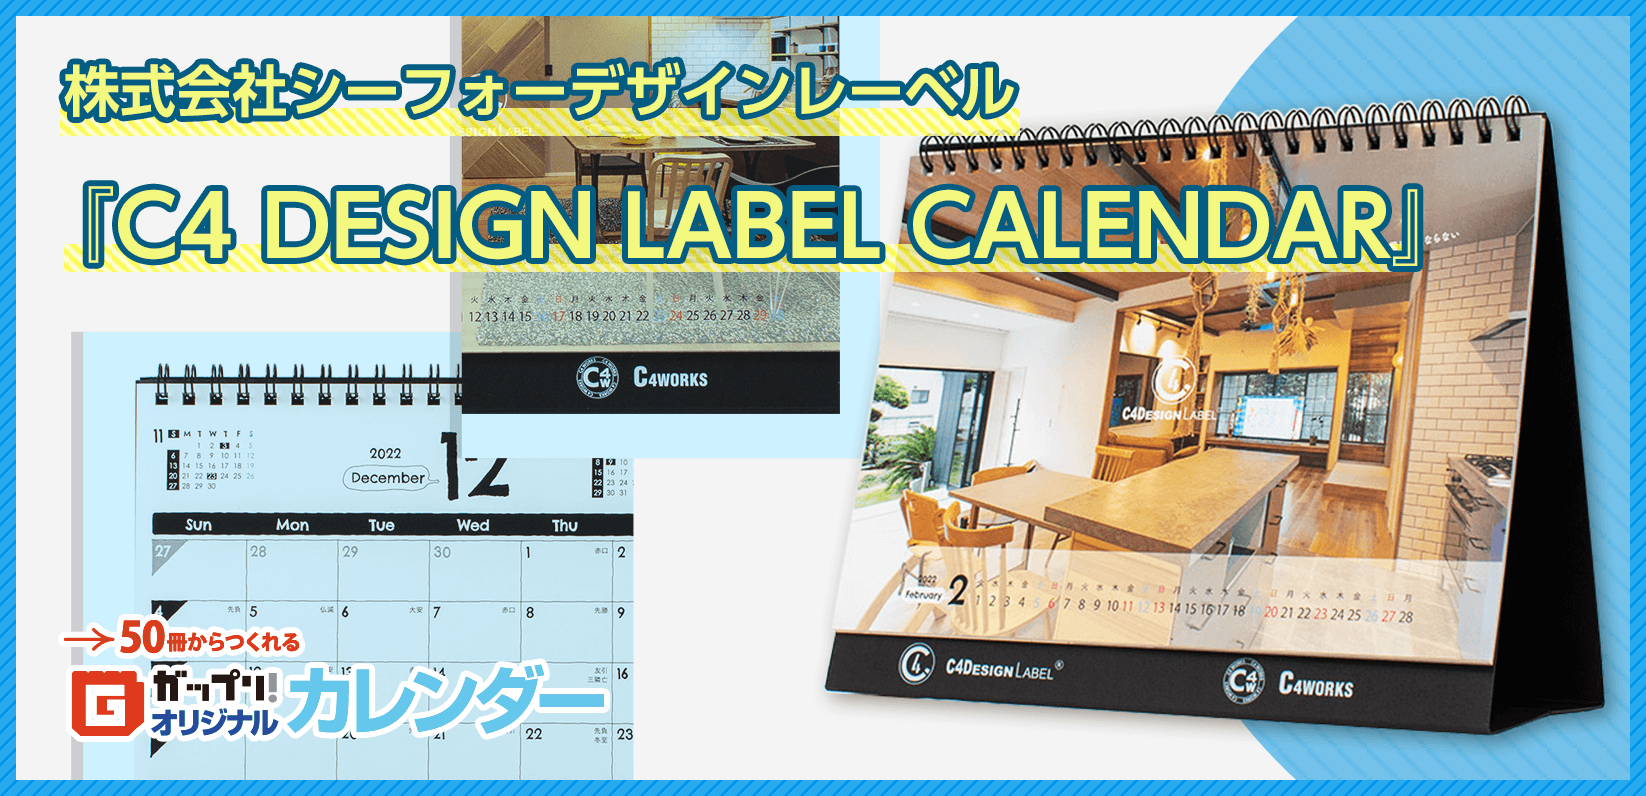 株式会社シーフォーデザインレーベル様製作のオリジナルカレンダー「C4 DESIGN LABEL CALENDAR」